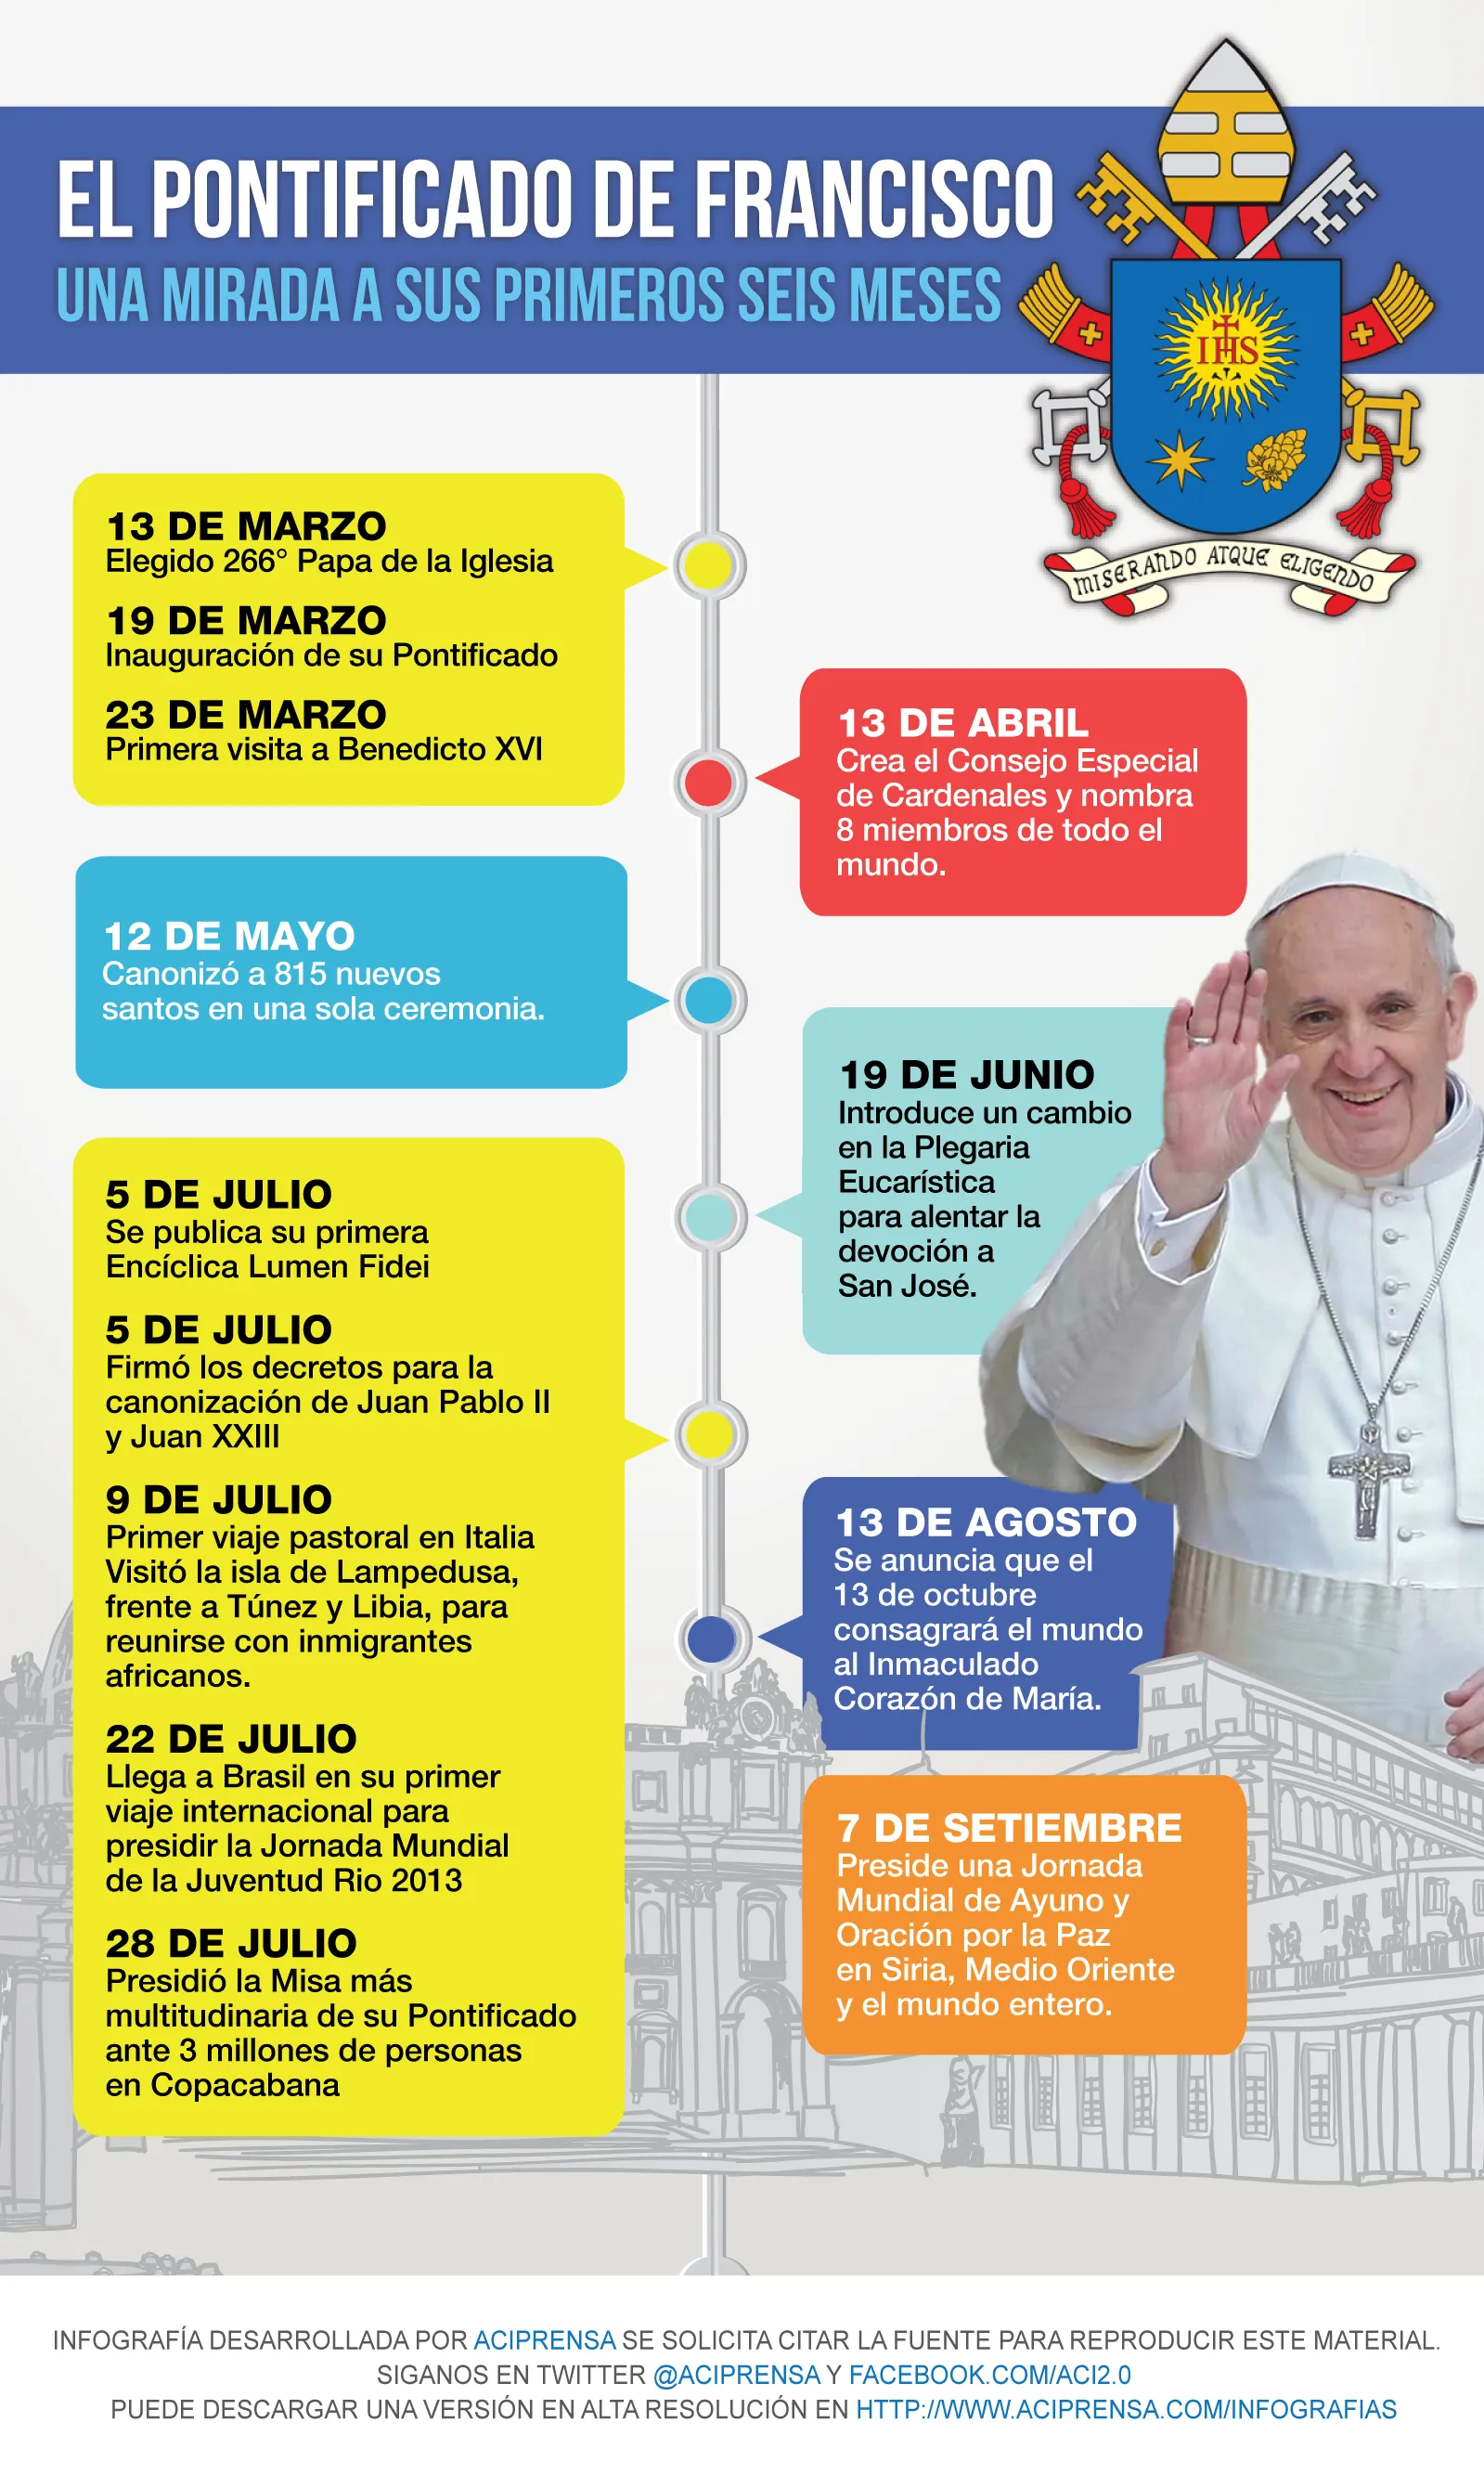 INFOGRAFIA: Los primeros seis meses del Pontificado del Papa Francisco